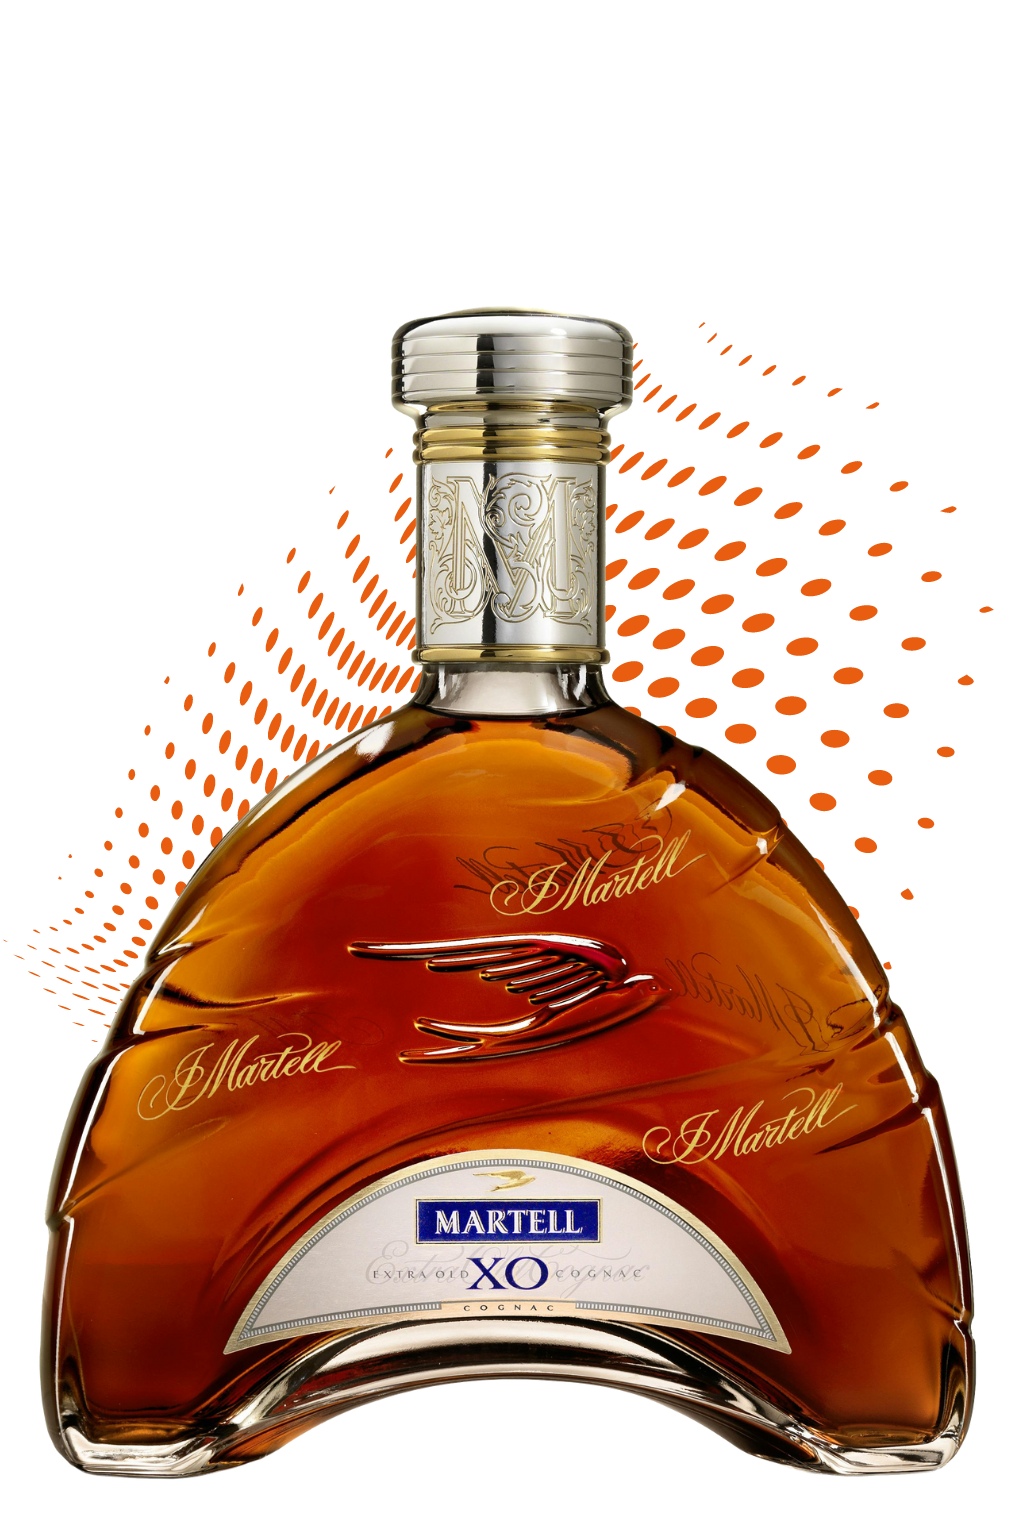 Martell cognac français XO